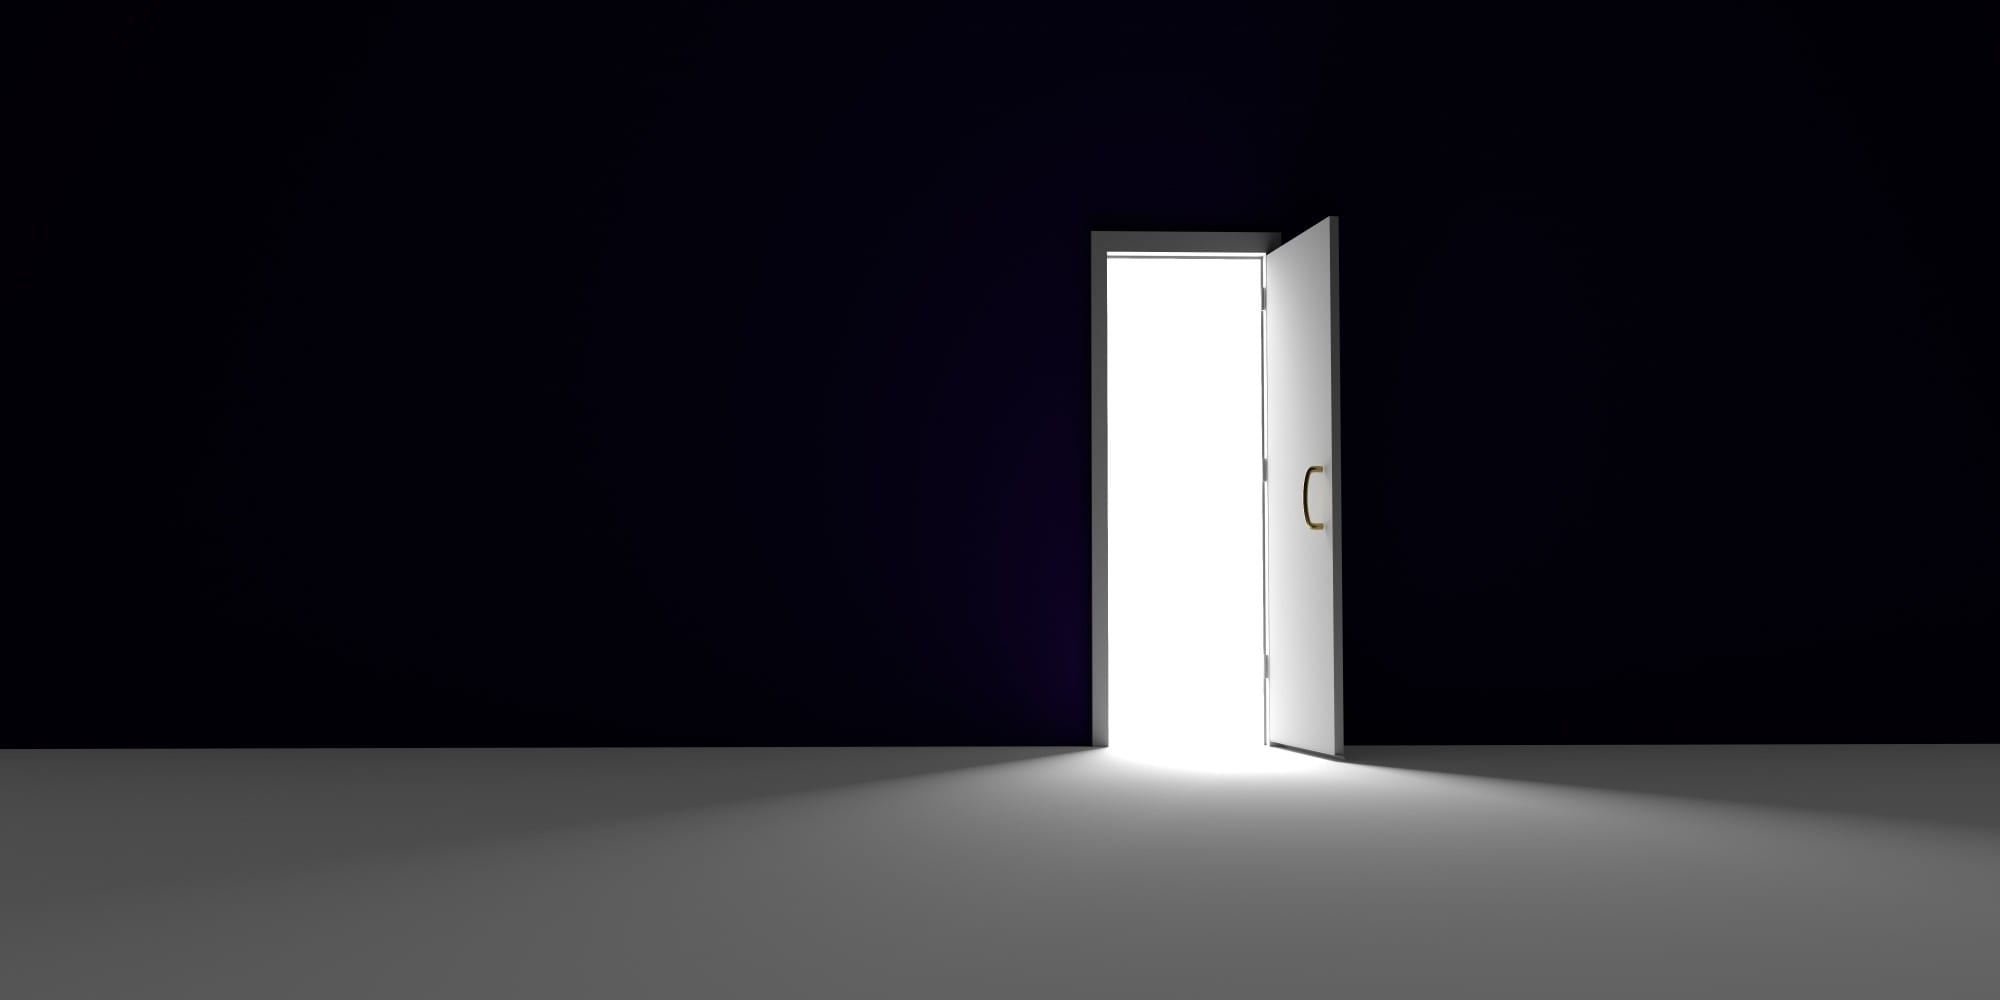 ما هو الباب الذي لا يمكن فتحه والشيء الذي تستطيع فتحه ولا تستطيع غلقه؟